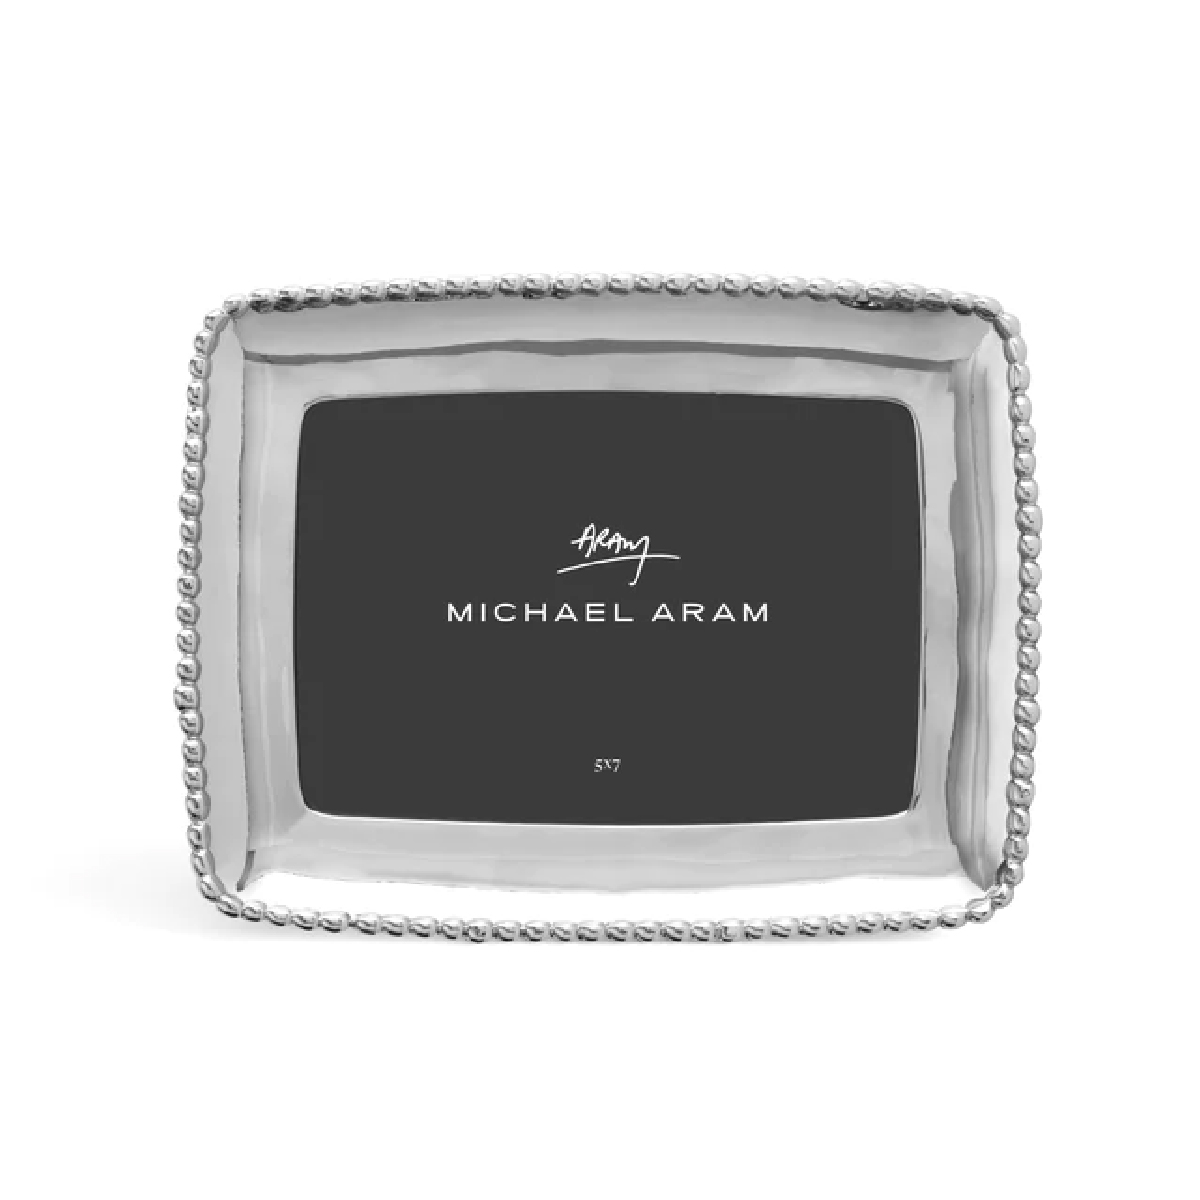 Michael Aram - Molten 5x7 Frame